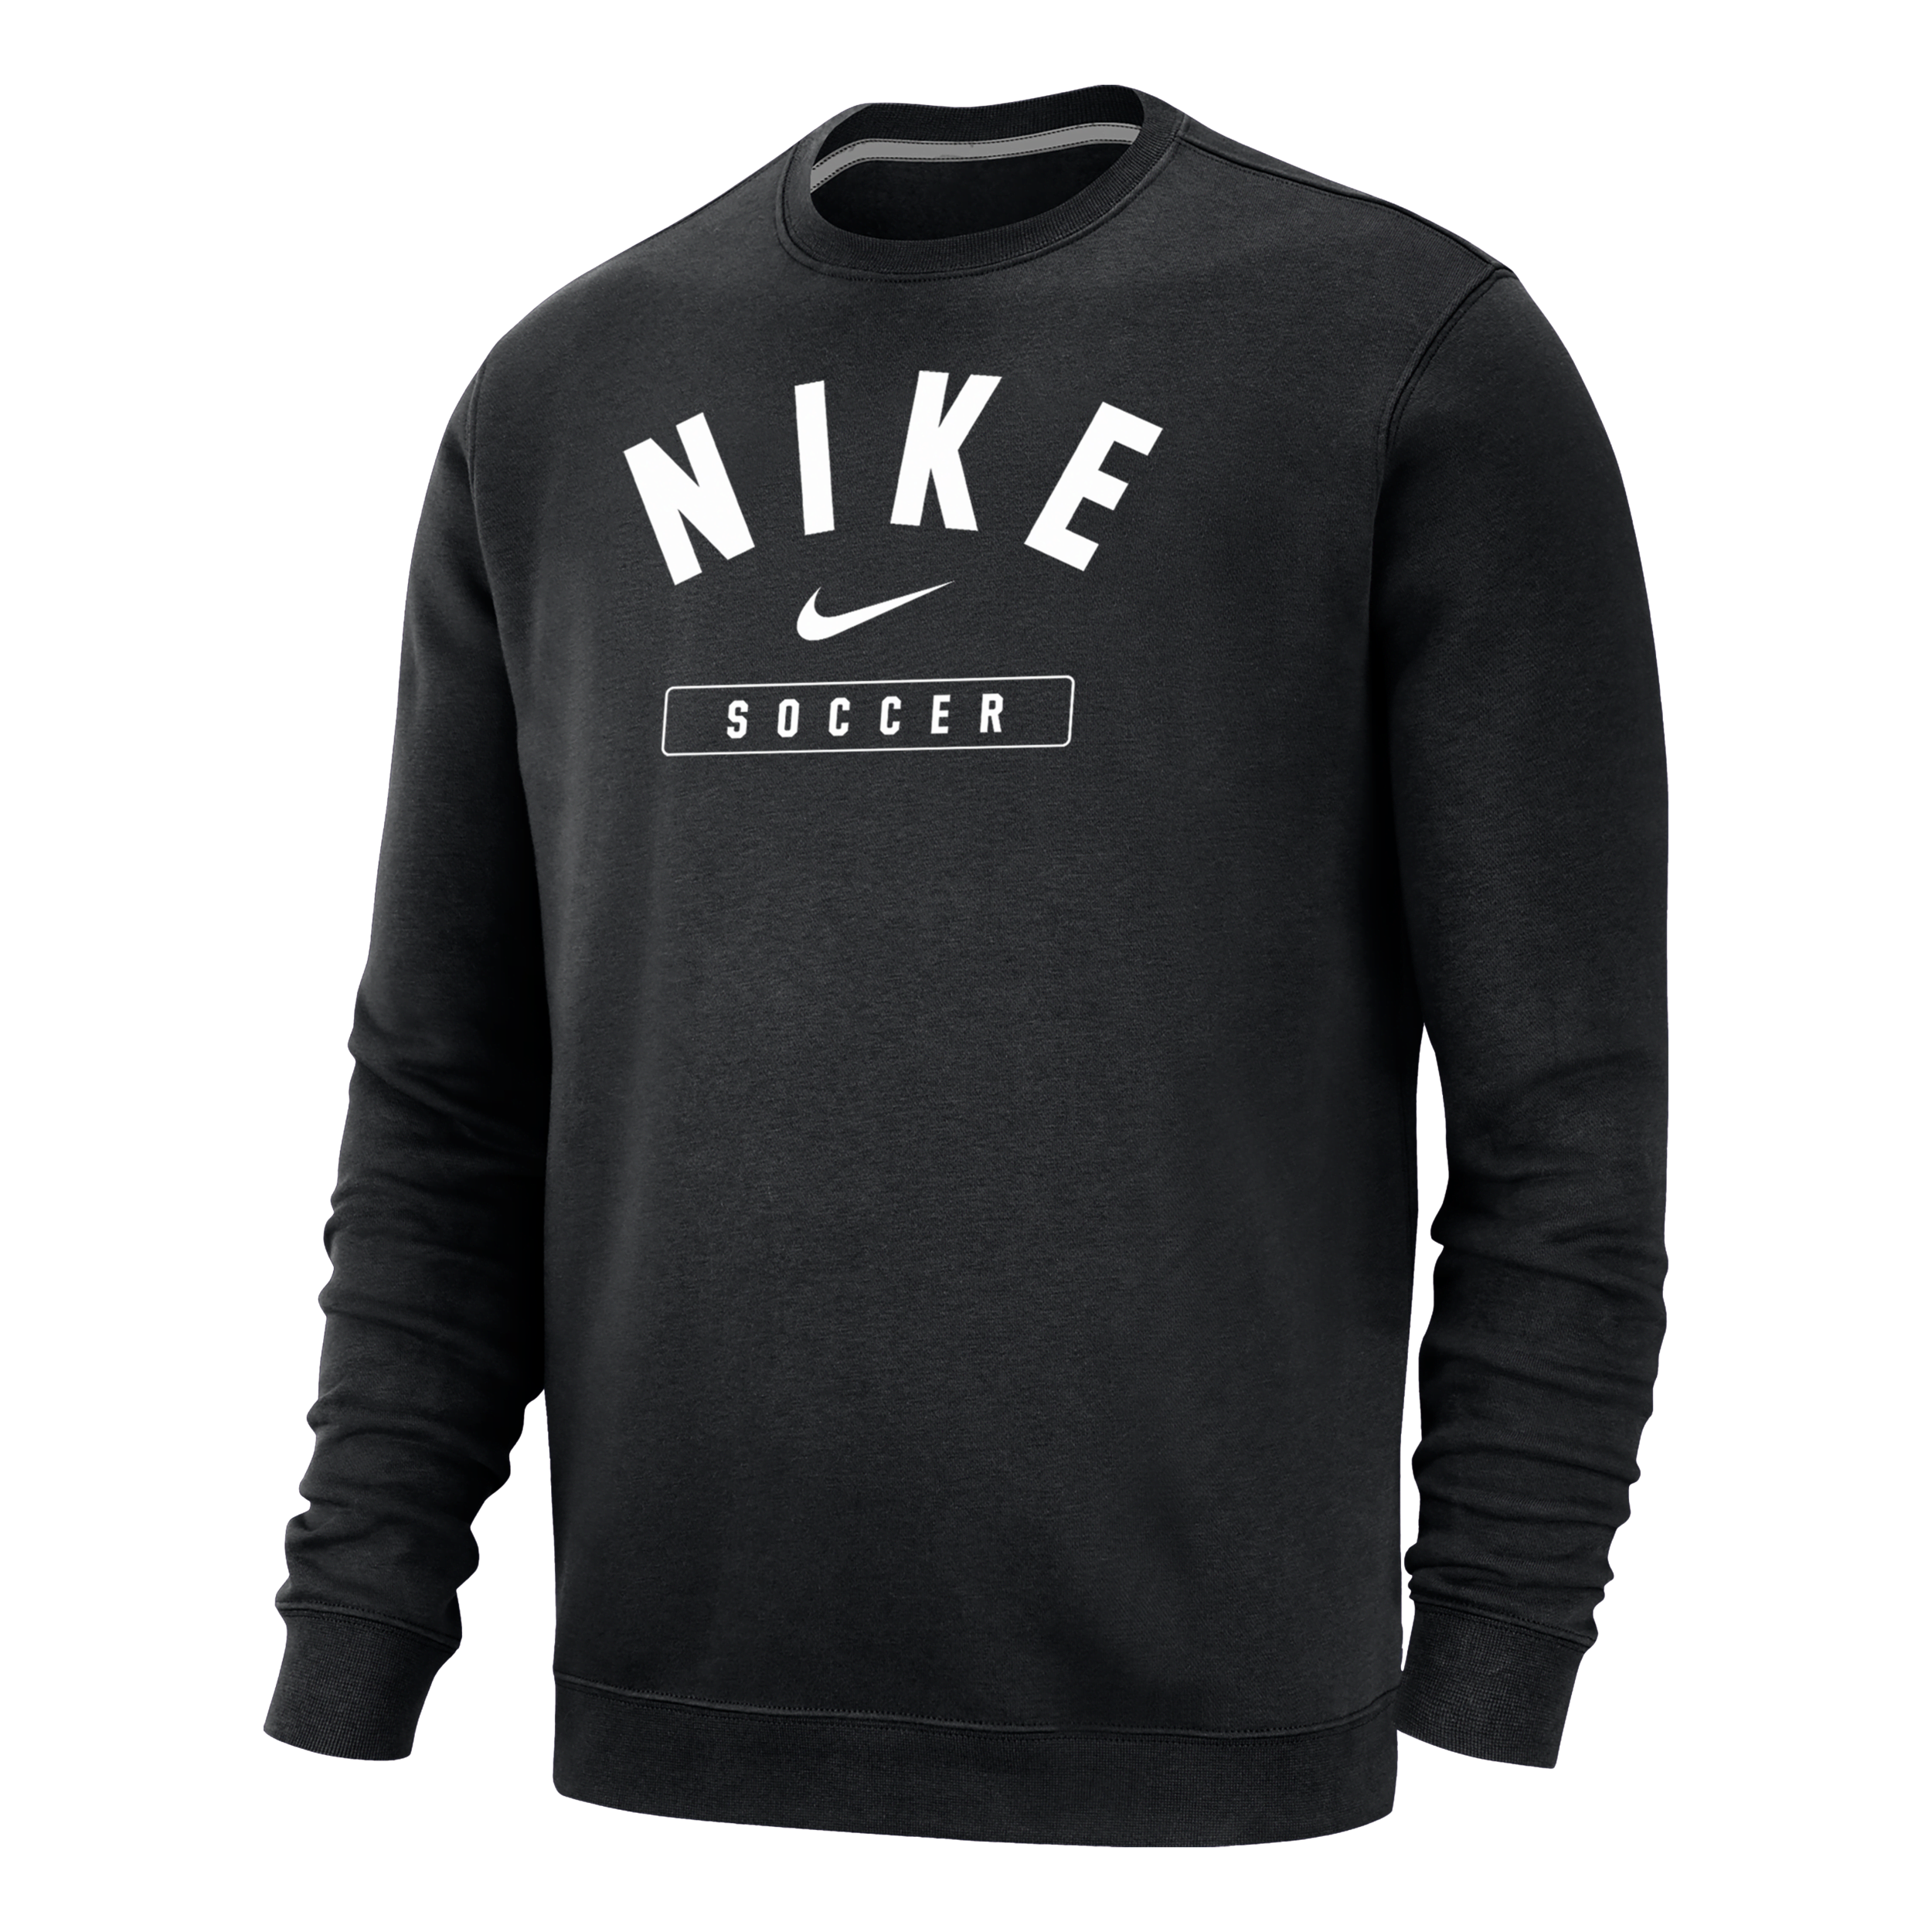 Nike Men's Soccer Crew-neck Sweatshirt In Black